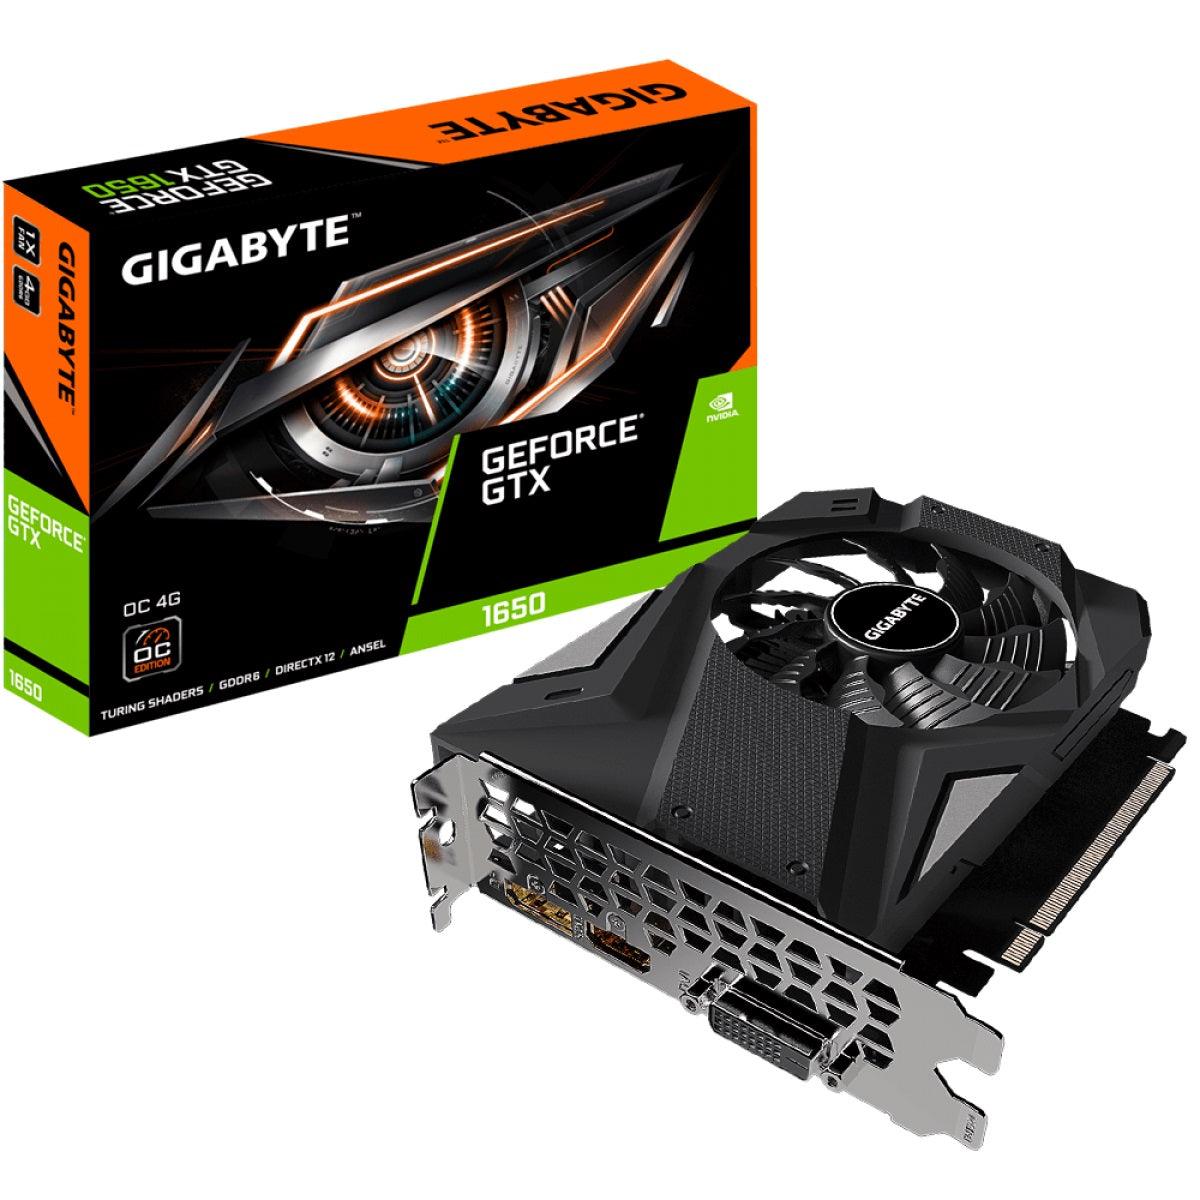 GIGABYTE GPU GIGABYTE GeForce® GTX 1650 D6 OC 4G - Graphics Card